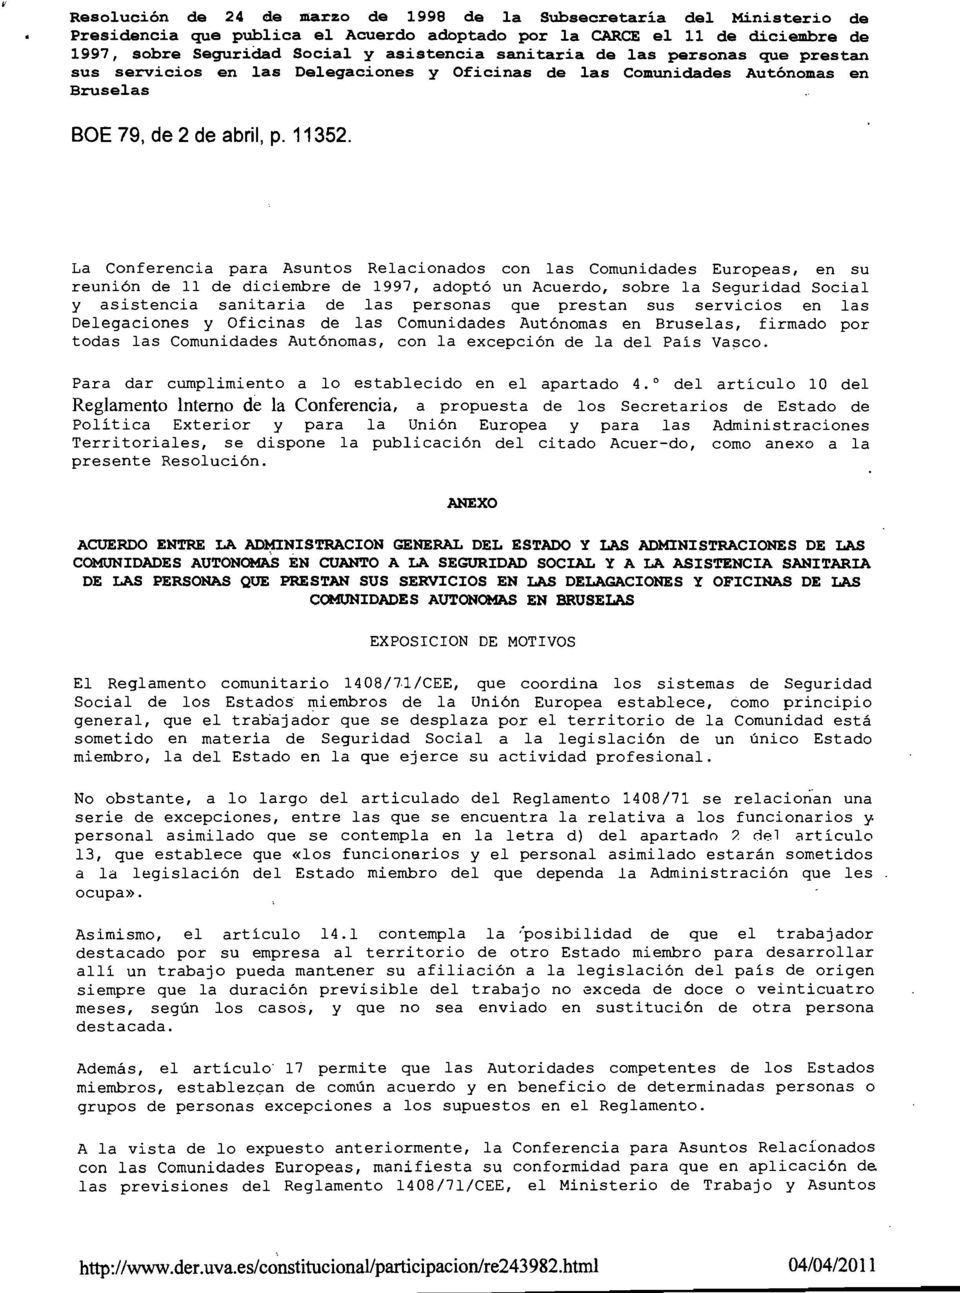 La Conferencia para Asuntos Relacionados con las Comunidades Europeas, en su reunión de 11 de diciembre de 1997, adoptó un Acuerdo, sobre la Seguridad Social y asistencia sanitaria de las personas